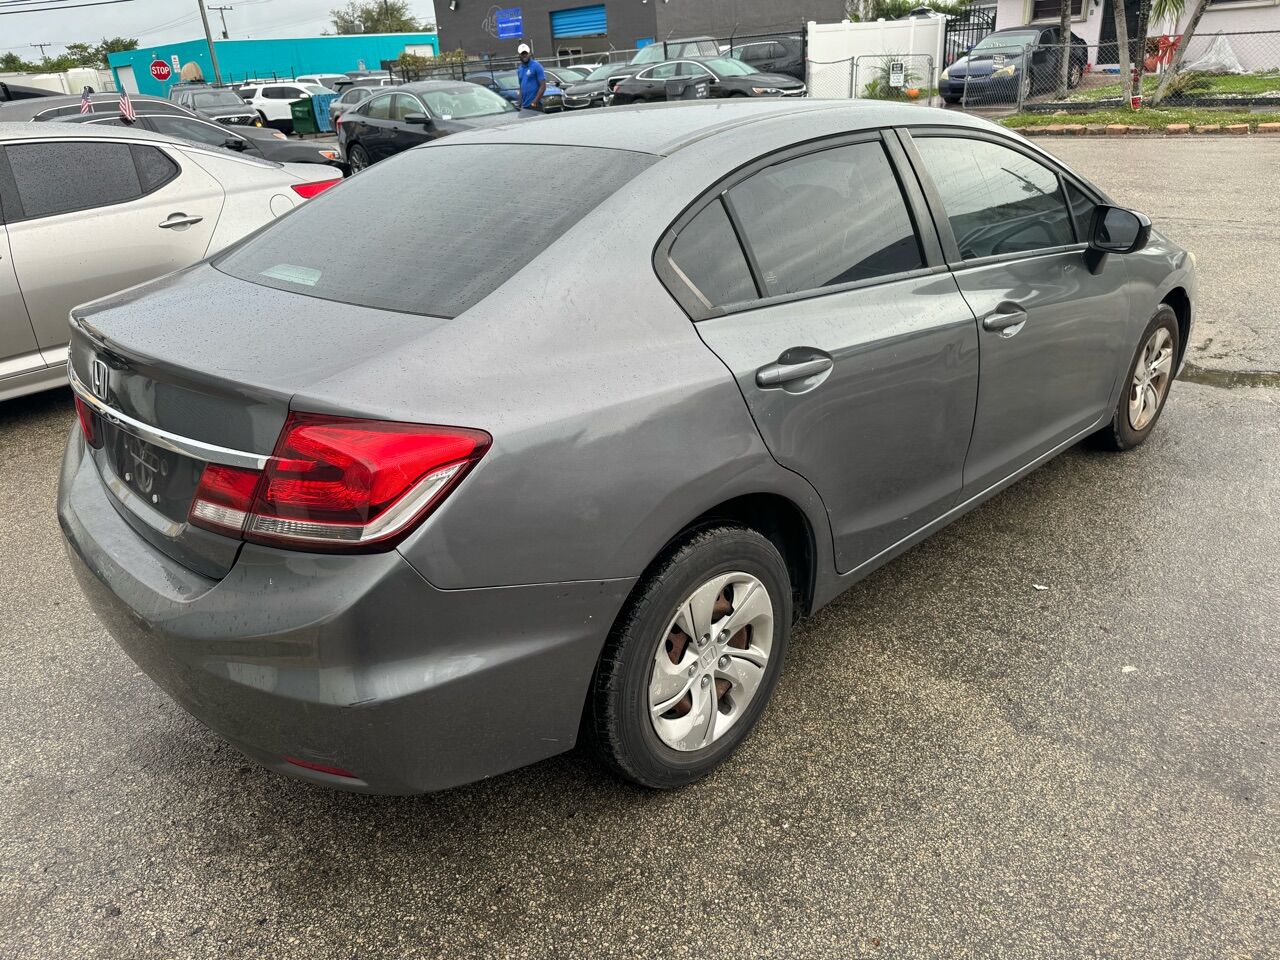 2013 HONDA Civic Sedan - $8,995